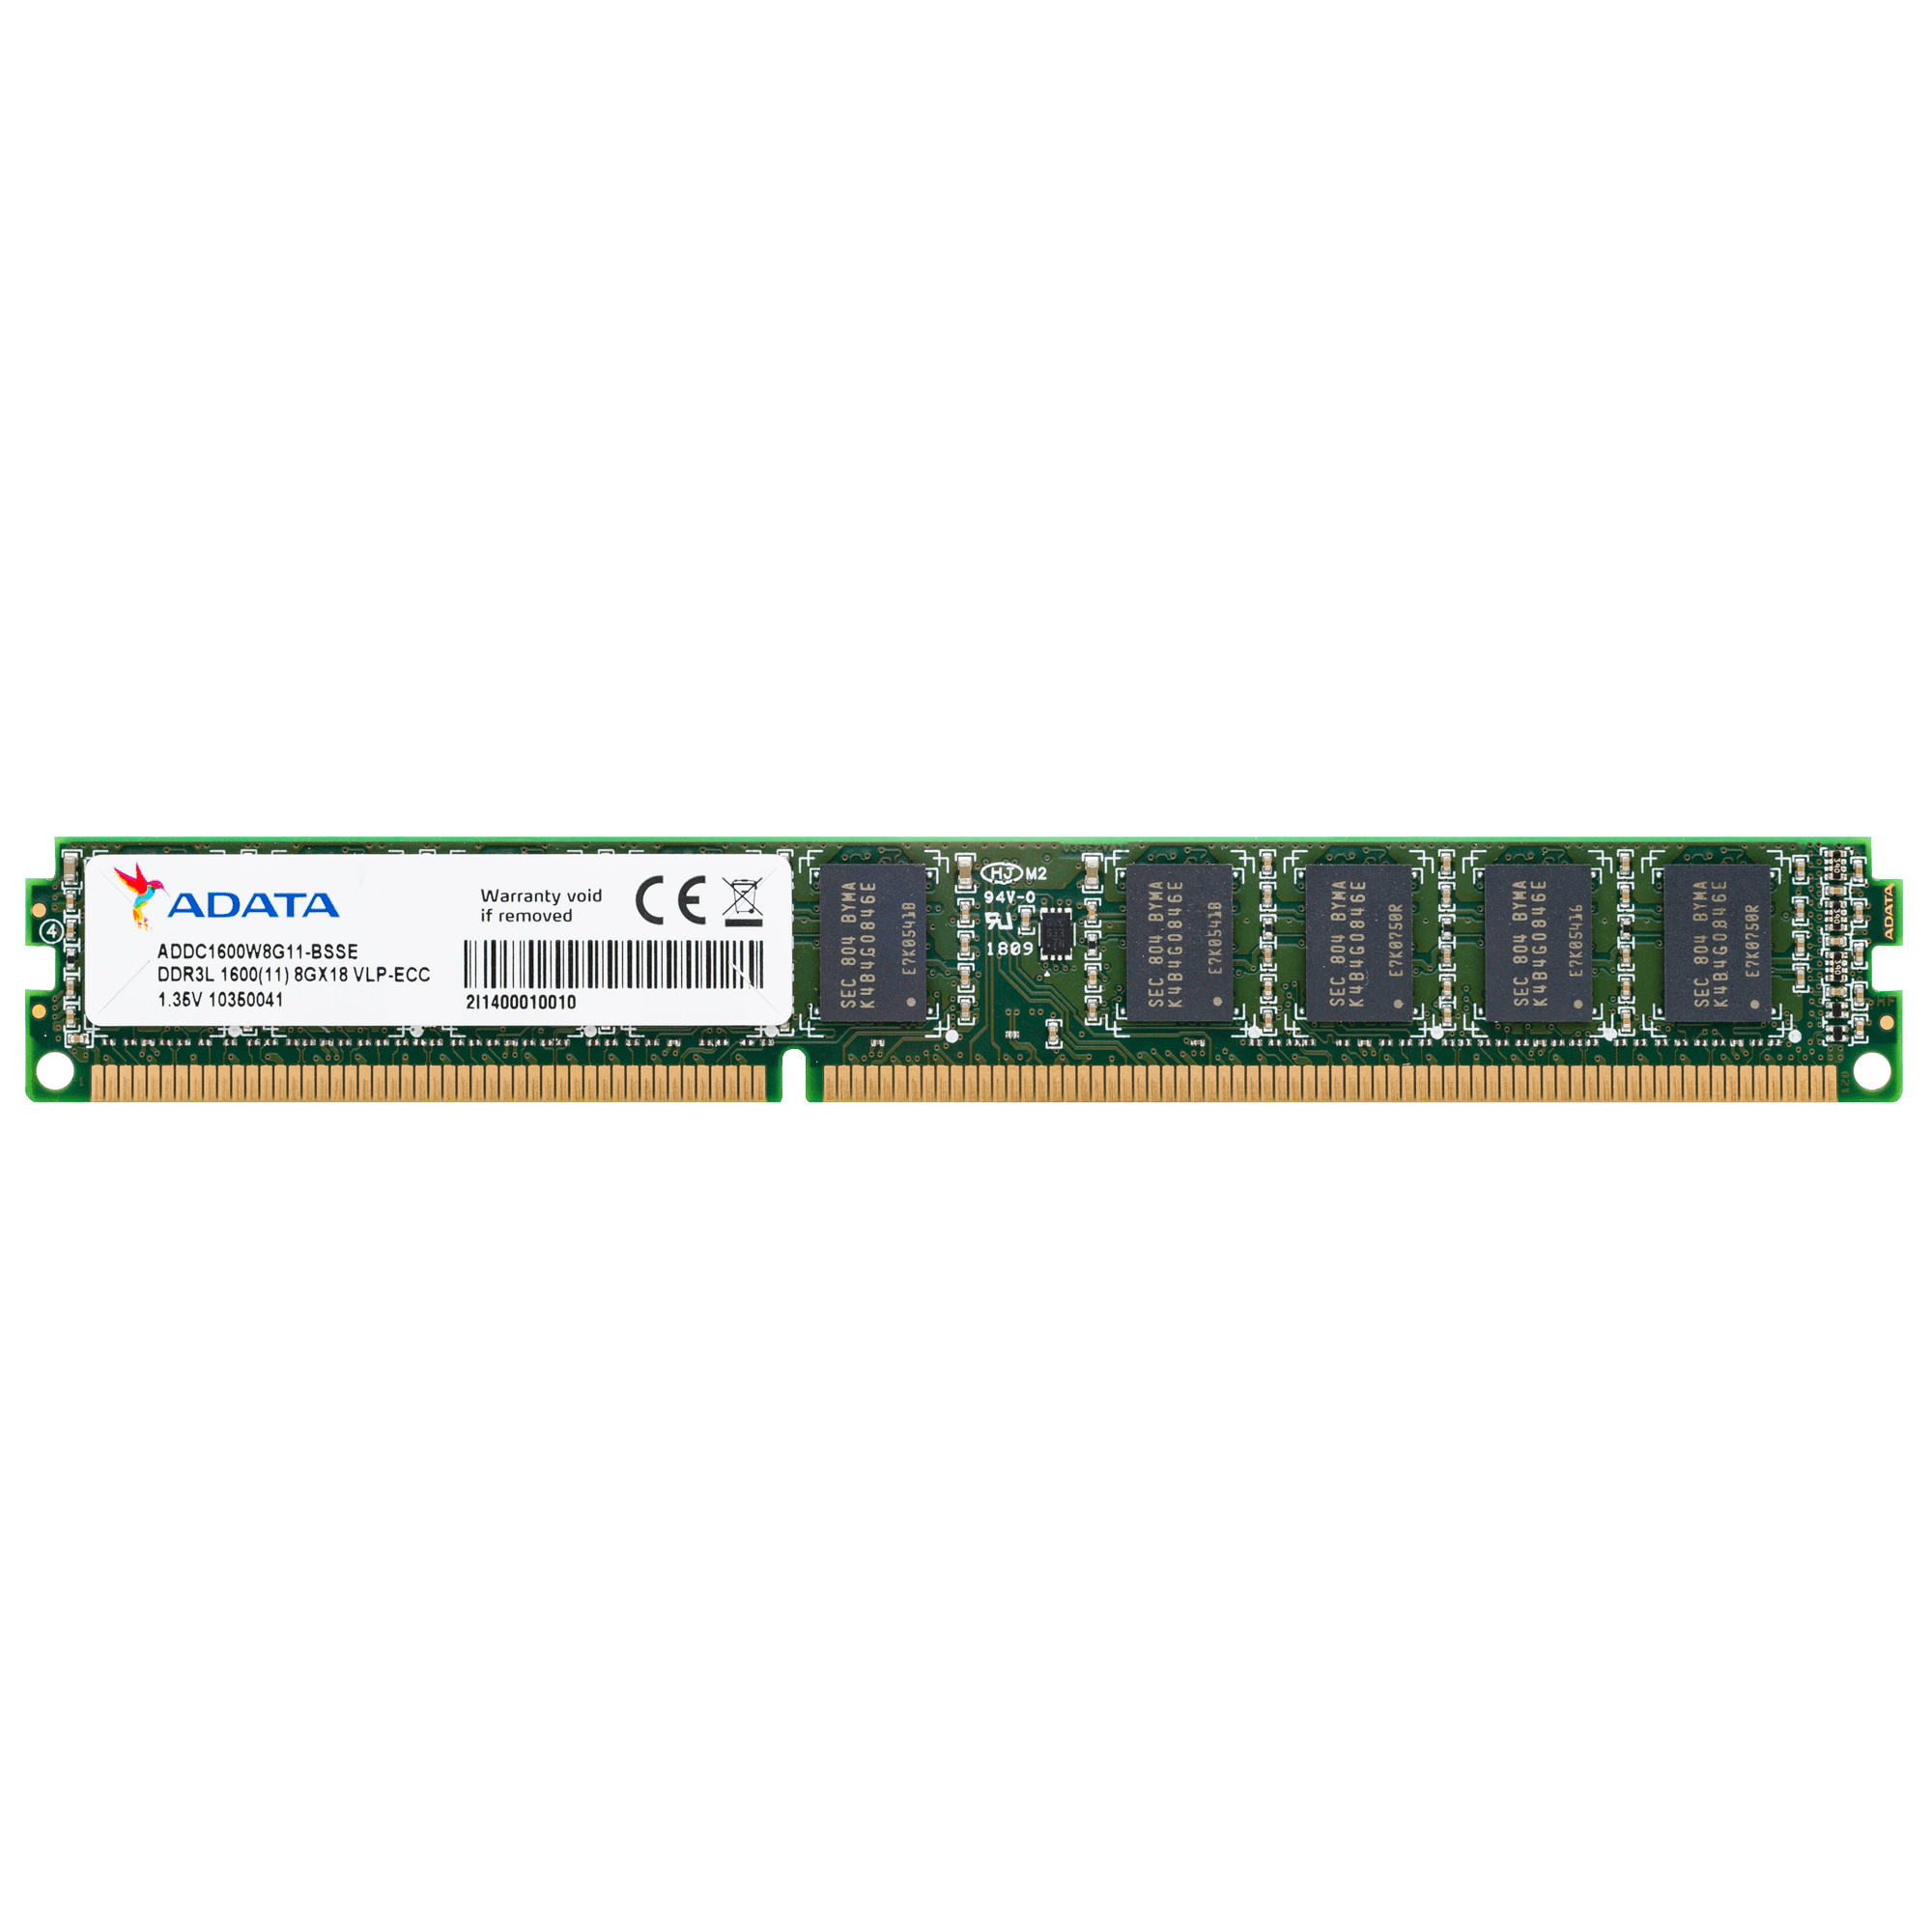 DDR3L VLP ECC U-DIMM